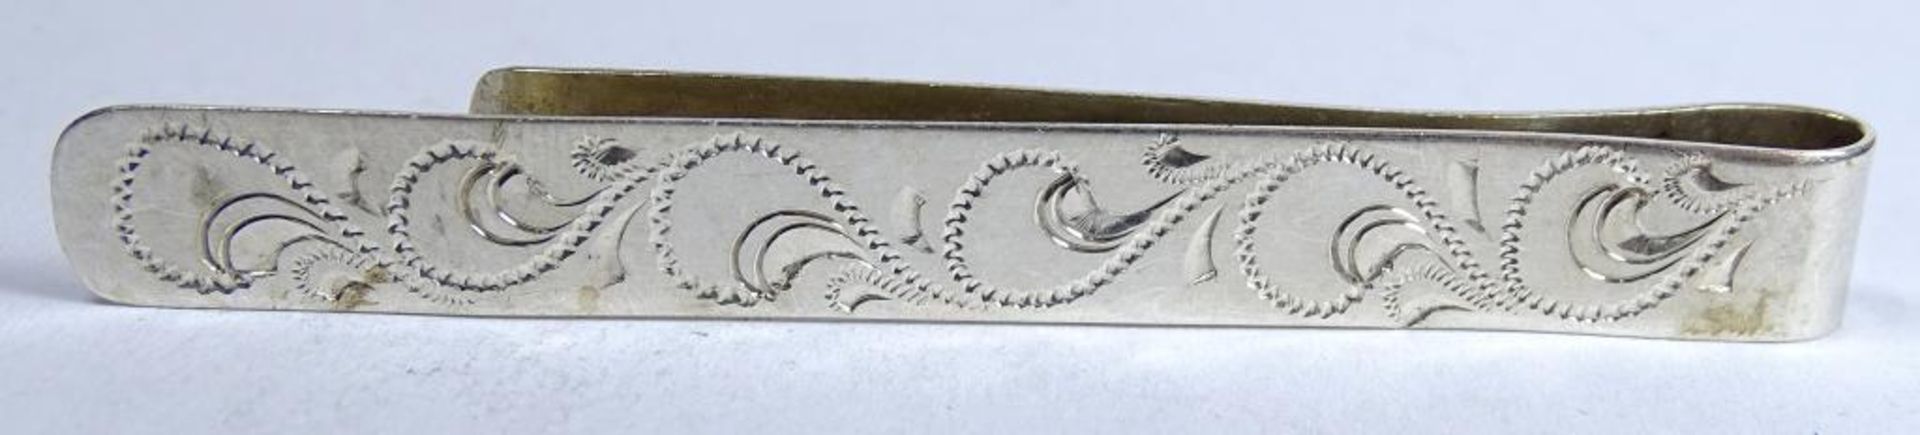 Krawattenklammer,Silber -835- Handarbeit,L-6,8cm, 5,9gr. - Bild 2 aus 3